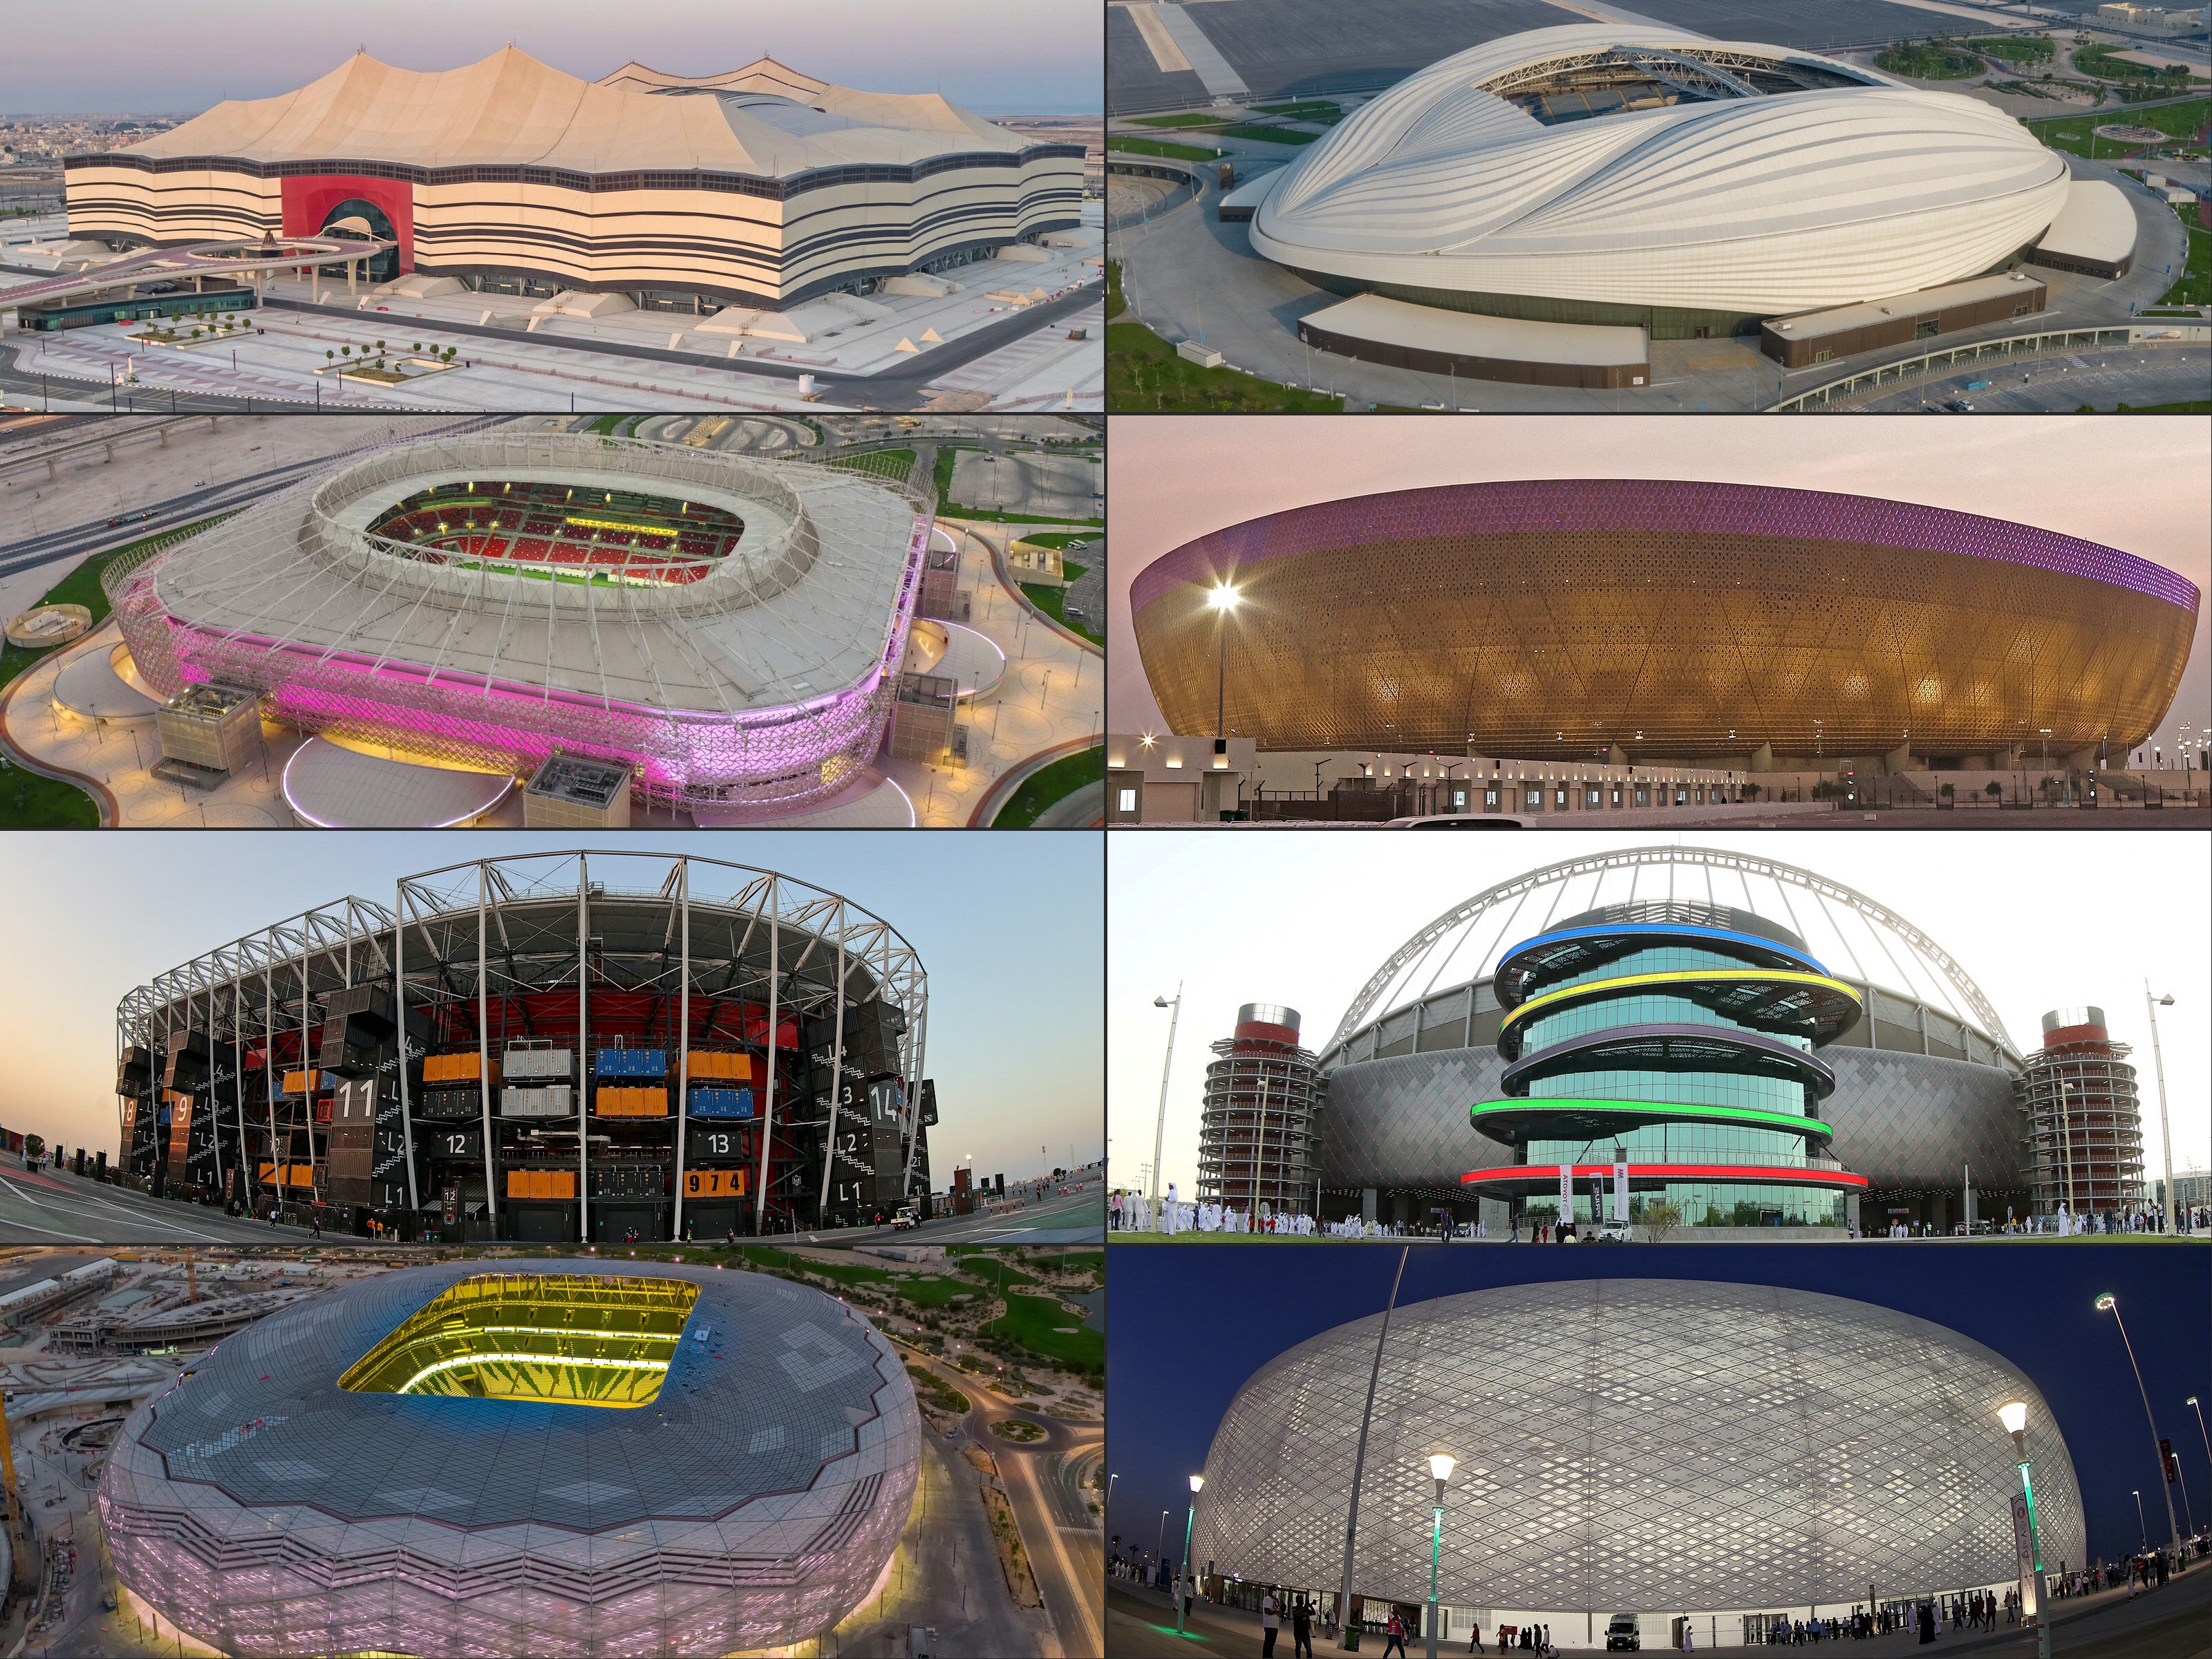 World Cup 2022 không chỉ là một sự kiện thể thao quan trọng mà còn là cơ hội để kiếm tiền. Chủ nhà Qatar đã tạo ra những cơ hội kinh doanh đầy triển vọng cho các doanh nghiệp và cá nhân. Hãy cùng đón chờ những khoảnh khắc đặc biệt trong giải đấu này và tìm kiếm những cơ hội kinh doanh!